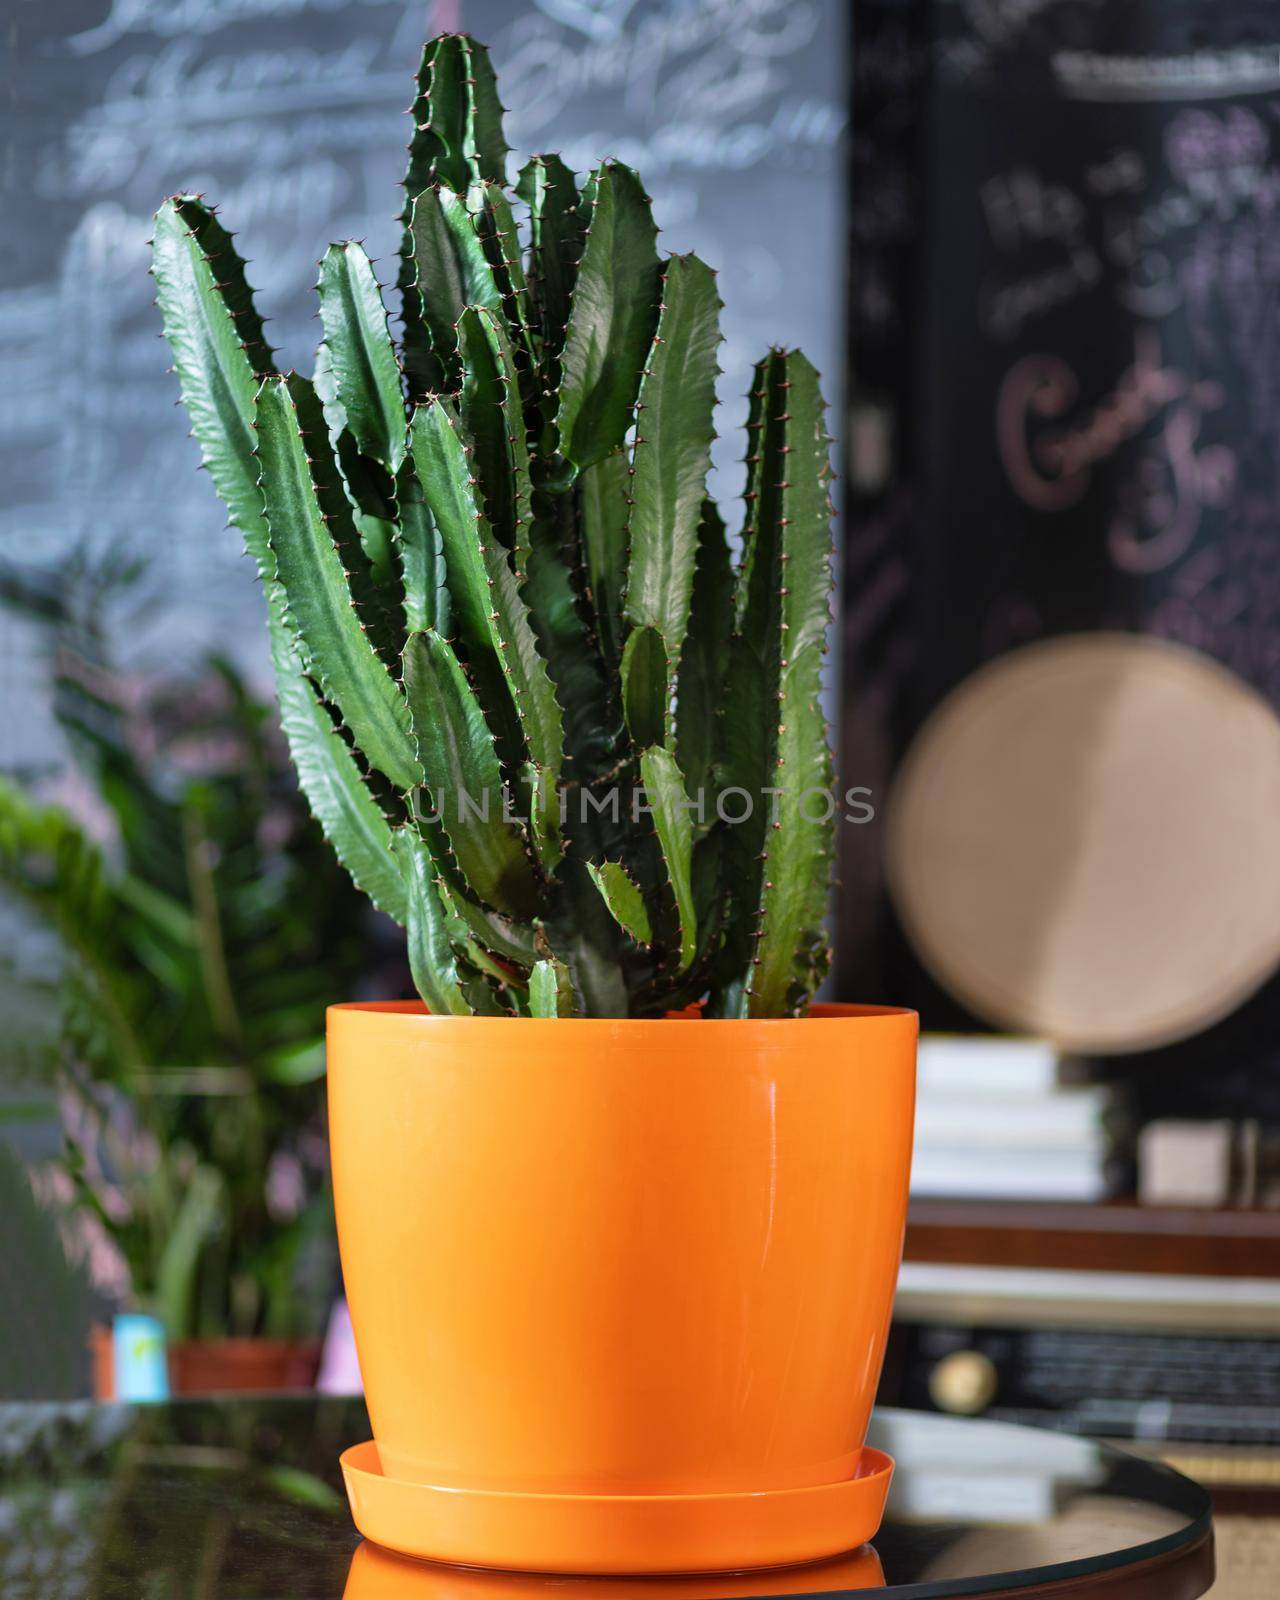 BIg cactus in the orange pot